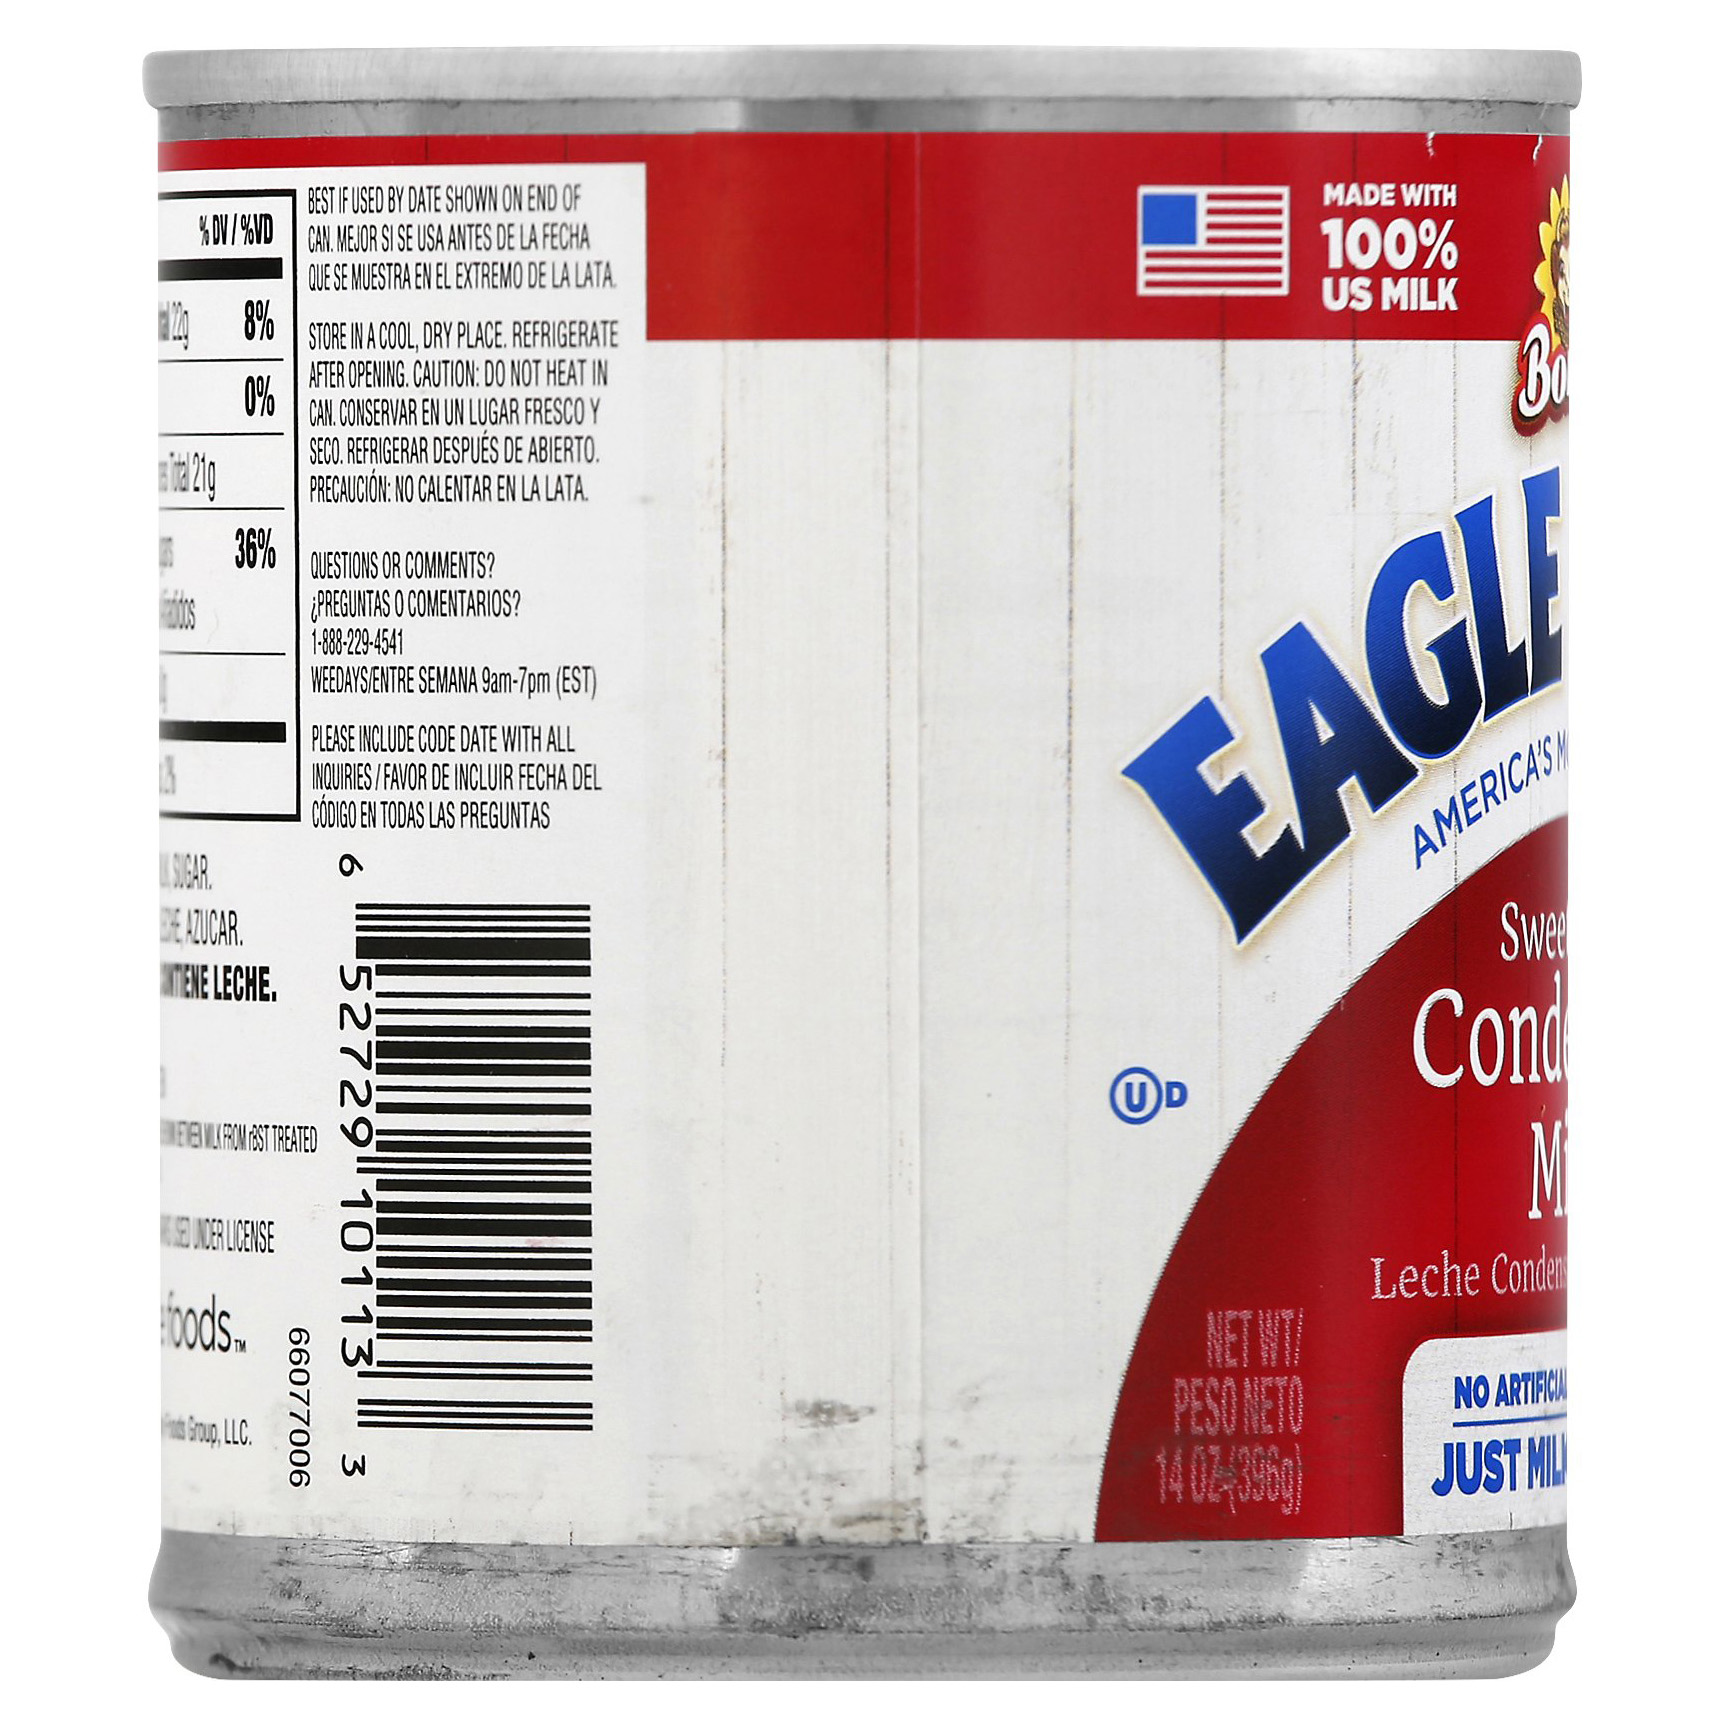 Borden Eagle Brand Condensed Milk - image 5 of 12